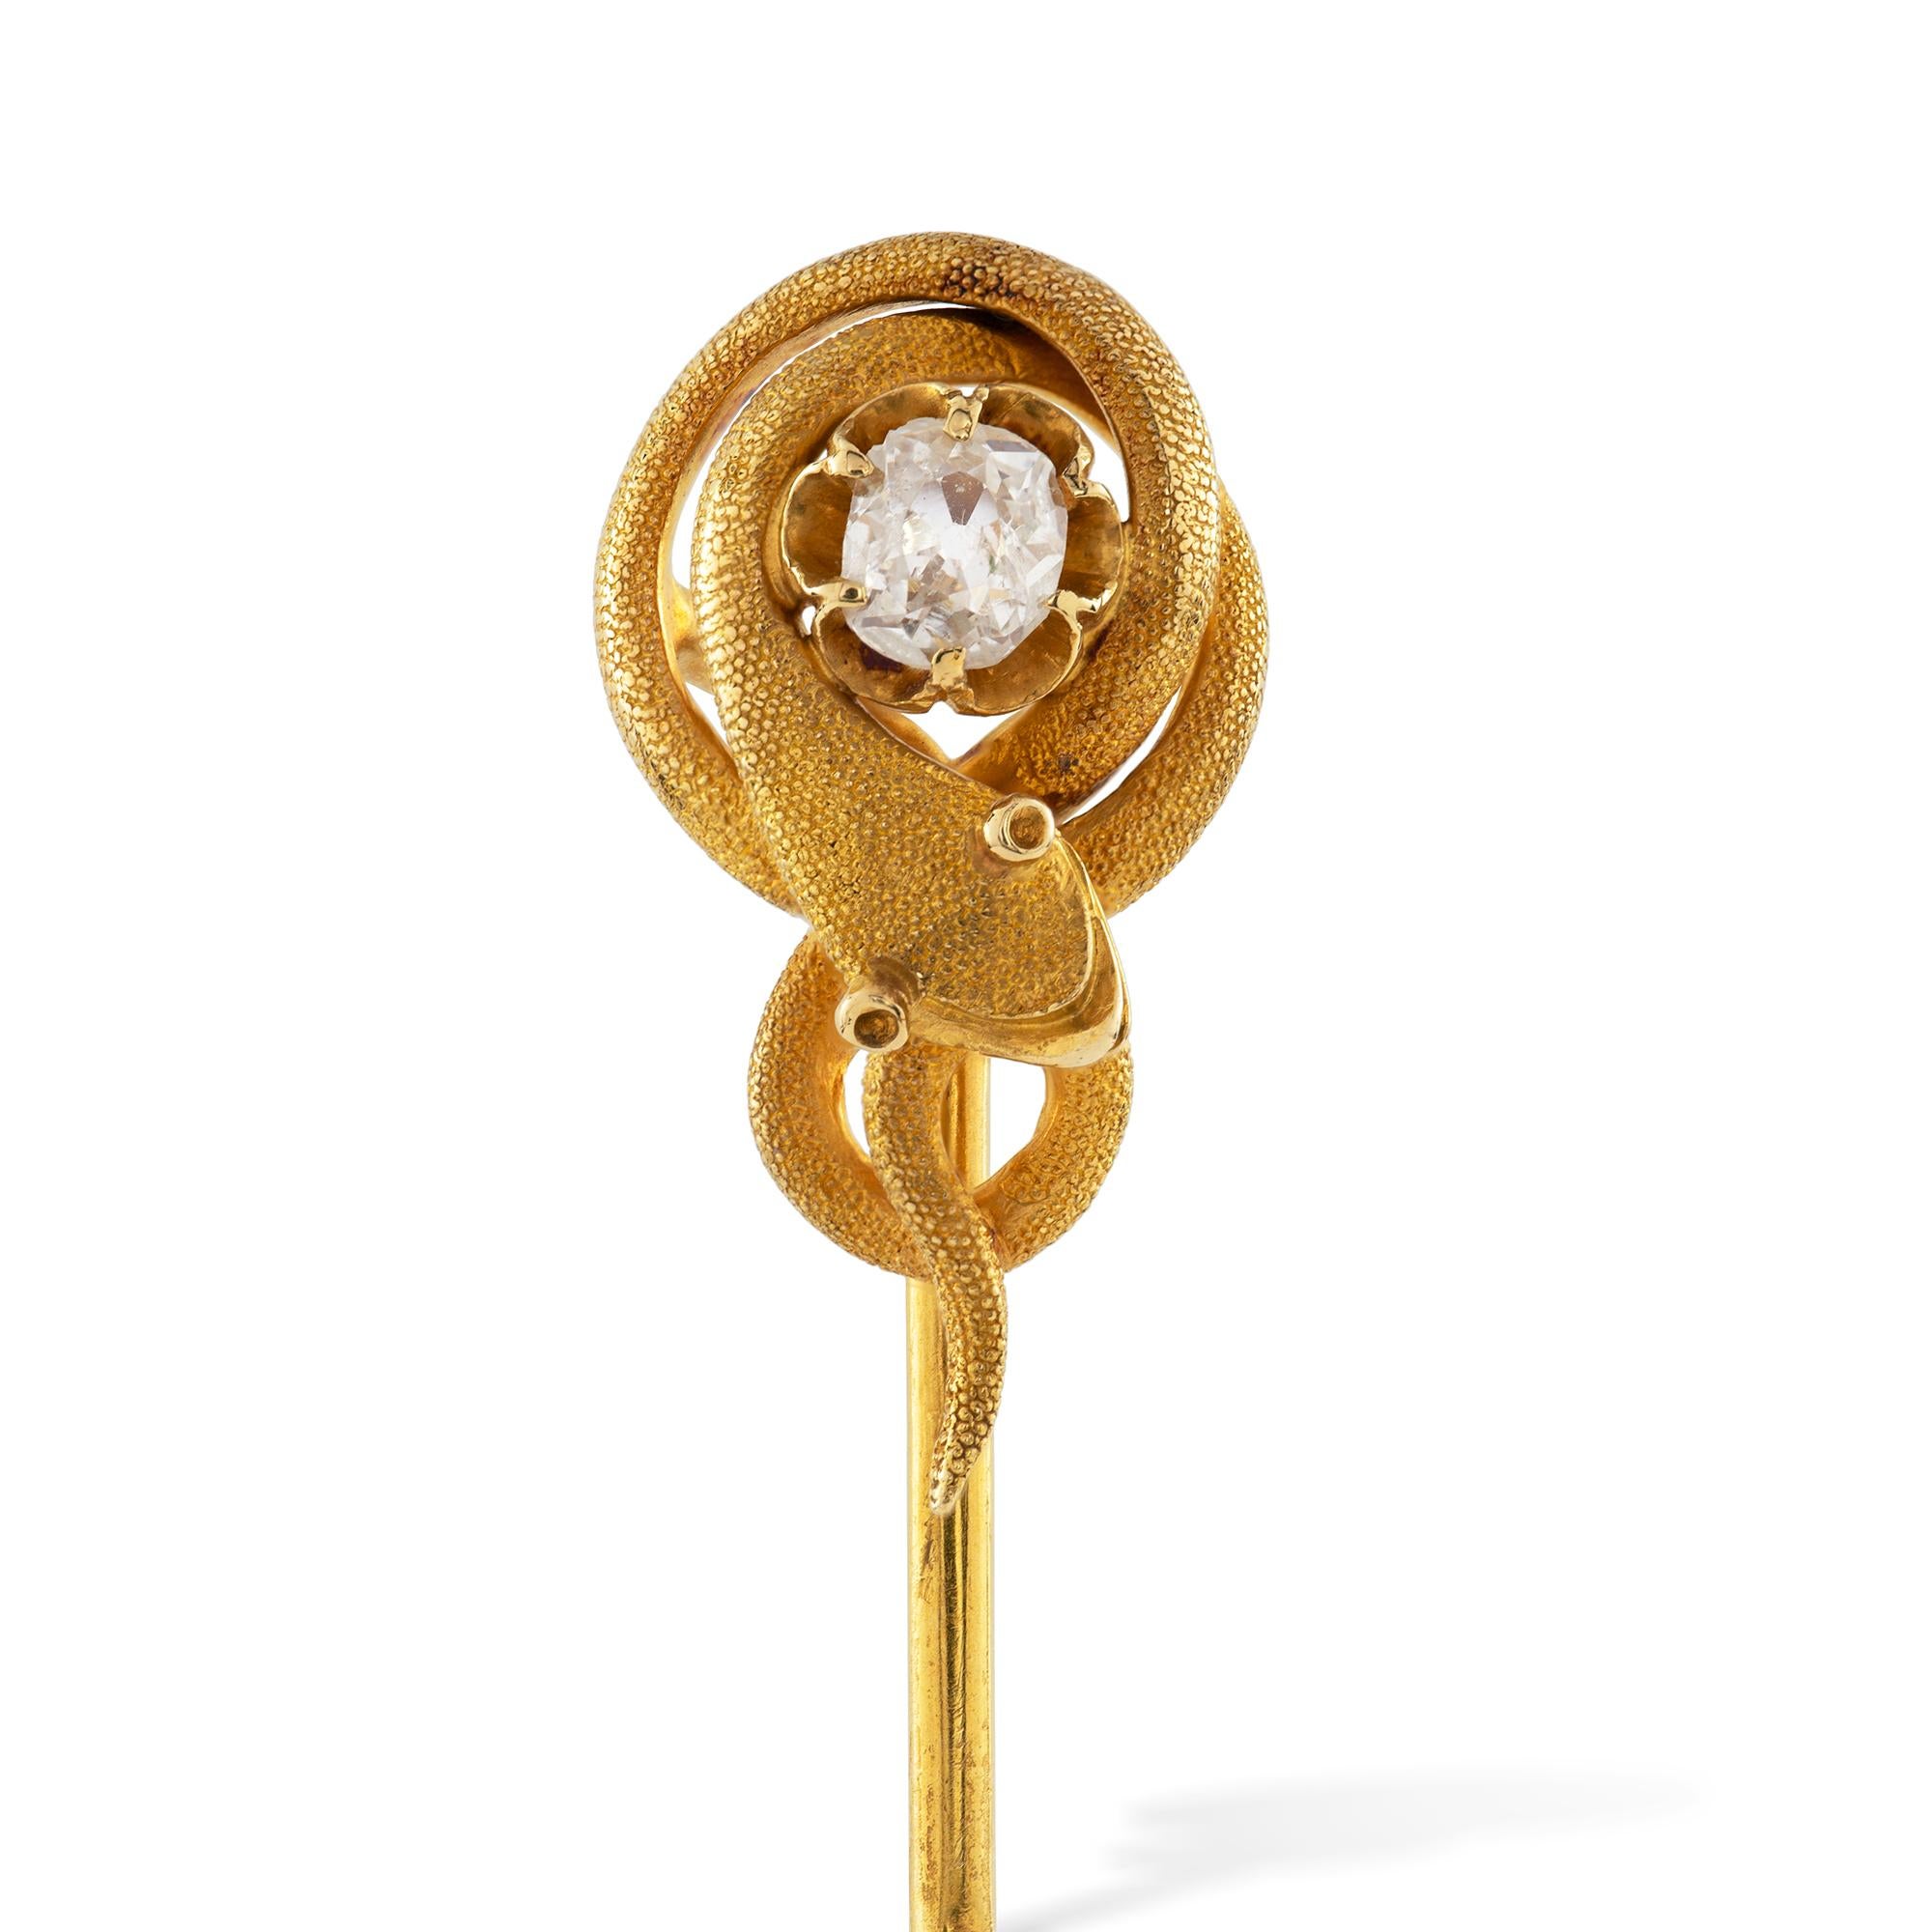 Eine viktorianische Schlangengold-Anstecknadel, der alte Diamant im europäischen Schliff mit einem Gewicht von ca. 0,3 Karat, umgeben von einer gewundenen Goldschlange mit strukturiertem Finish, alles in 18ct Gold, zu einer Gelbgold-Anstecknadel, um